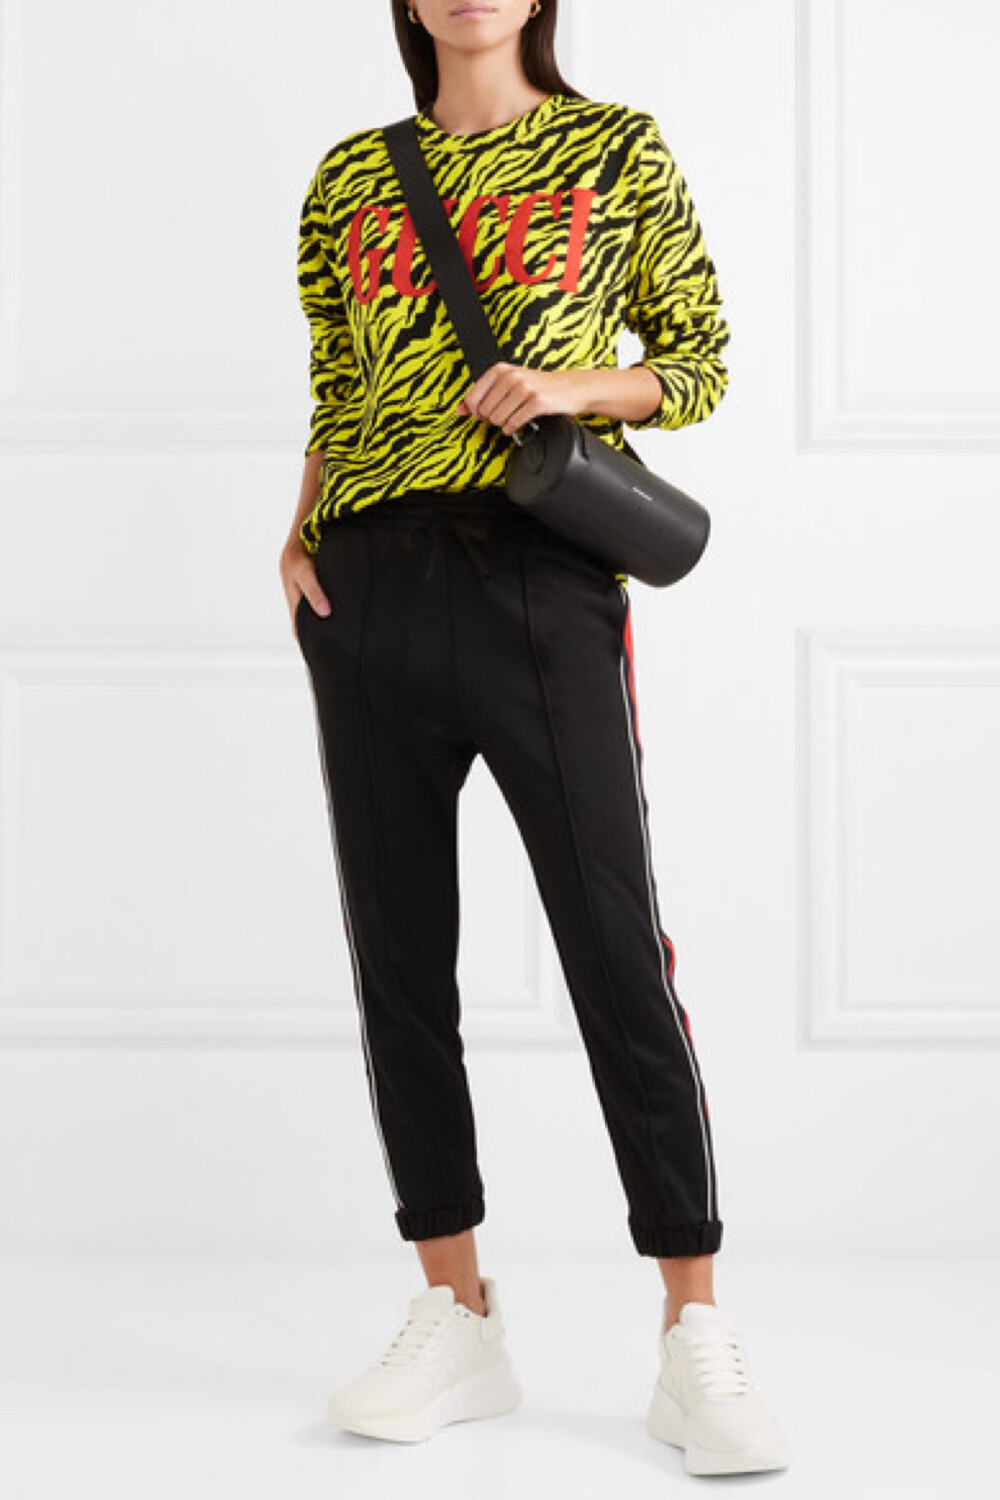 Gucci 的“鬼才”设计师 Alessandro Michele 向来无所畏惧，此番推出了新一系列的极繁主义作品。这款宽松休闲的荧光黄色卫衣印有虎纹图案和红色品牌 logo，吸睛的纹理和色调呼应了该系列的华丽摇滚风格。单品采用反面毛圈针织纯棉平纹布在意大利制成，天然带弹力的面料穿着舒适。本网站造型师偏爱它与休闲裤的搭配。